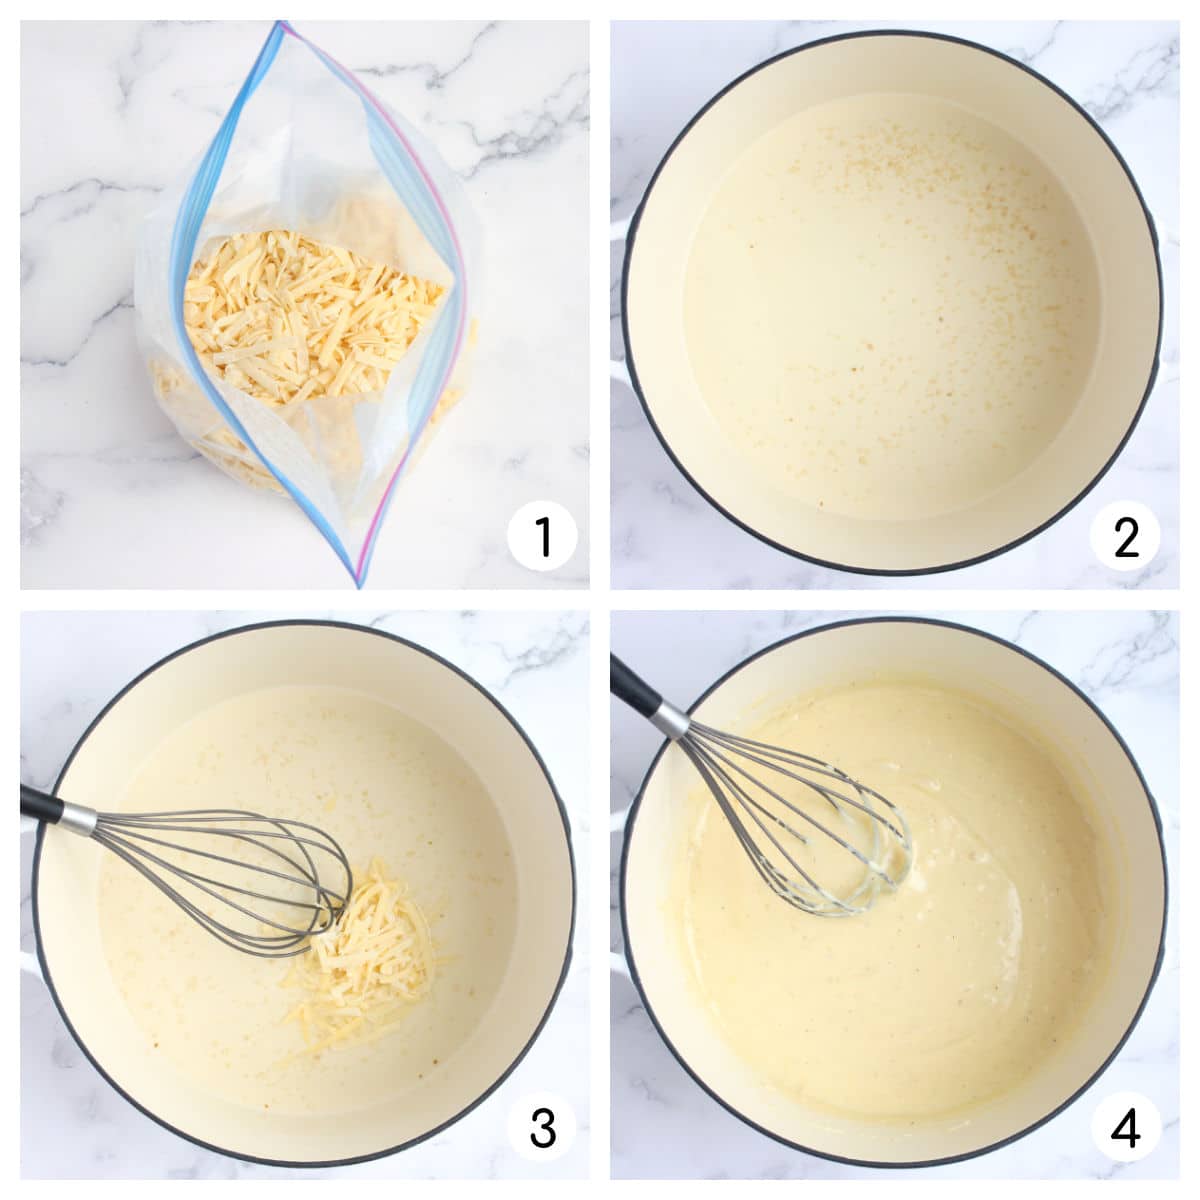 ع، های مربوط به طرز تهیه فوندو پنیر را پردازش کنید